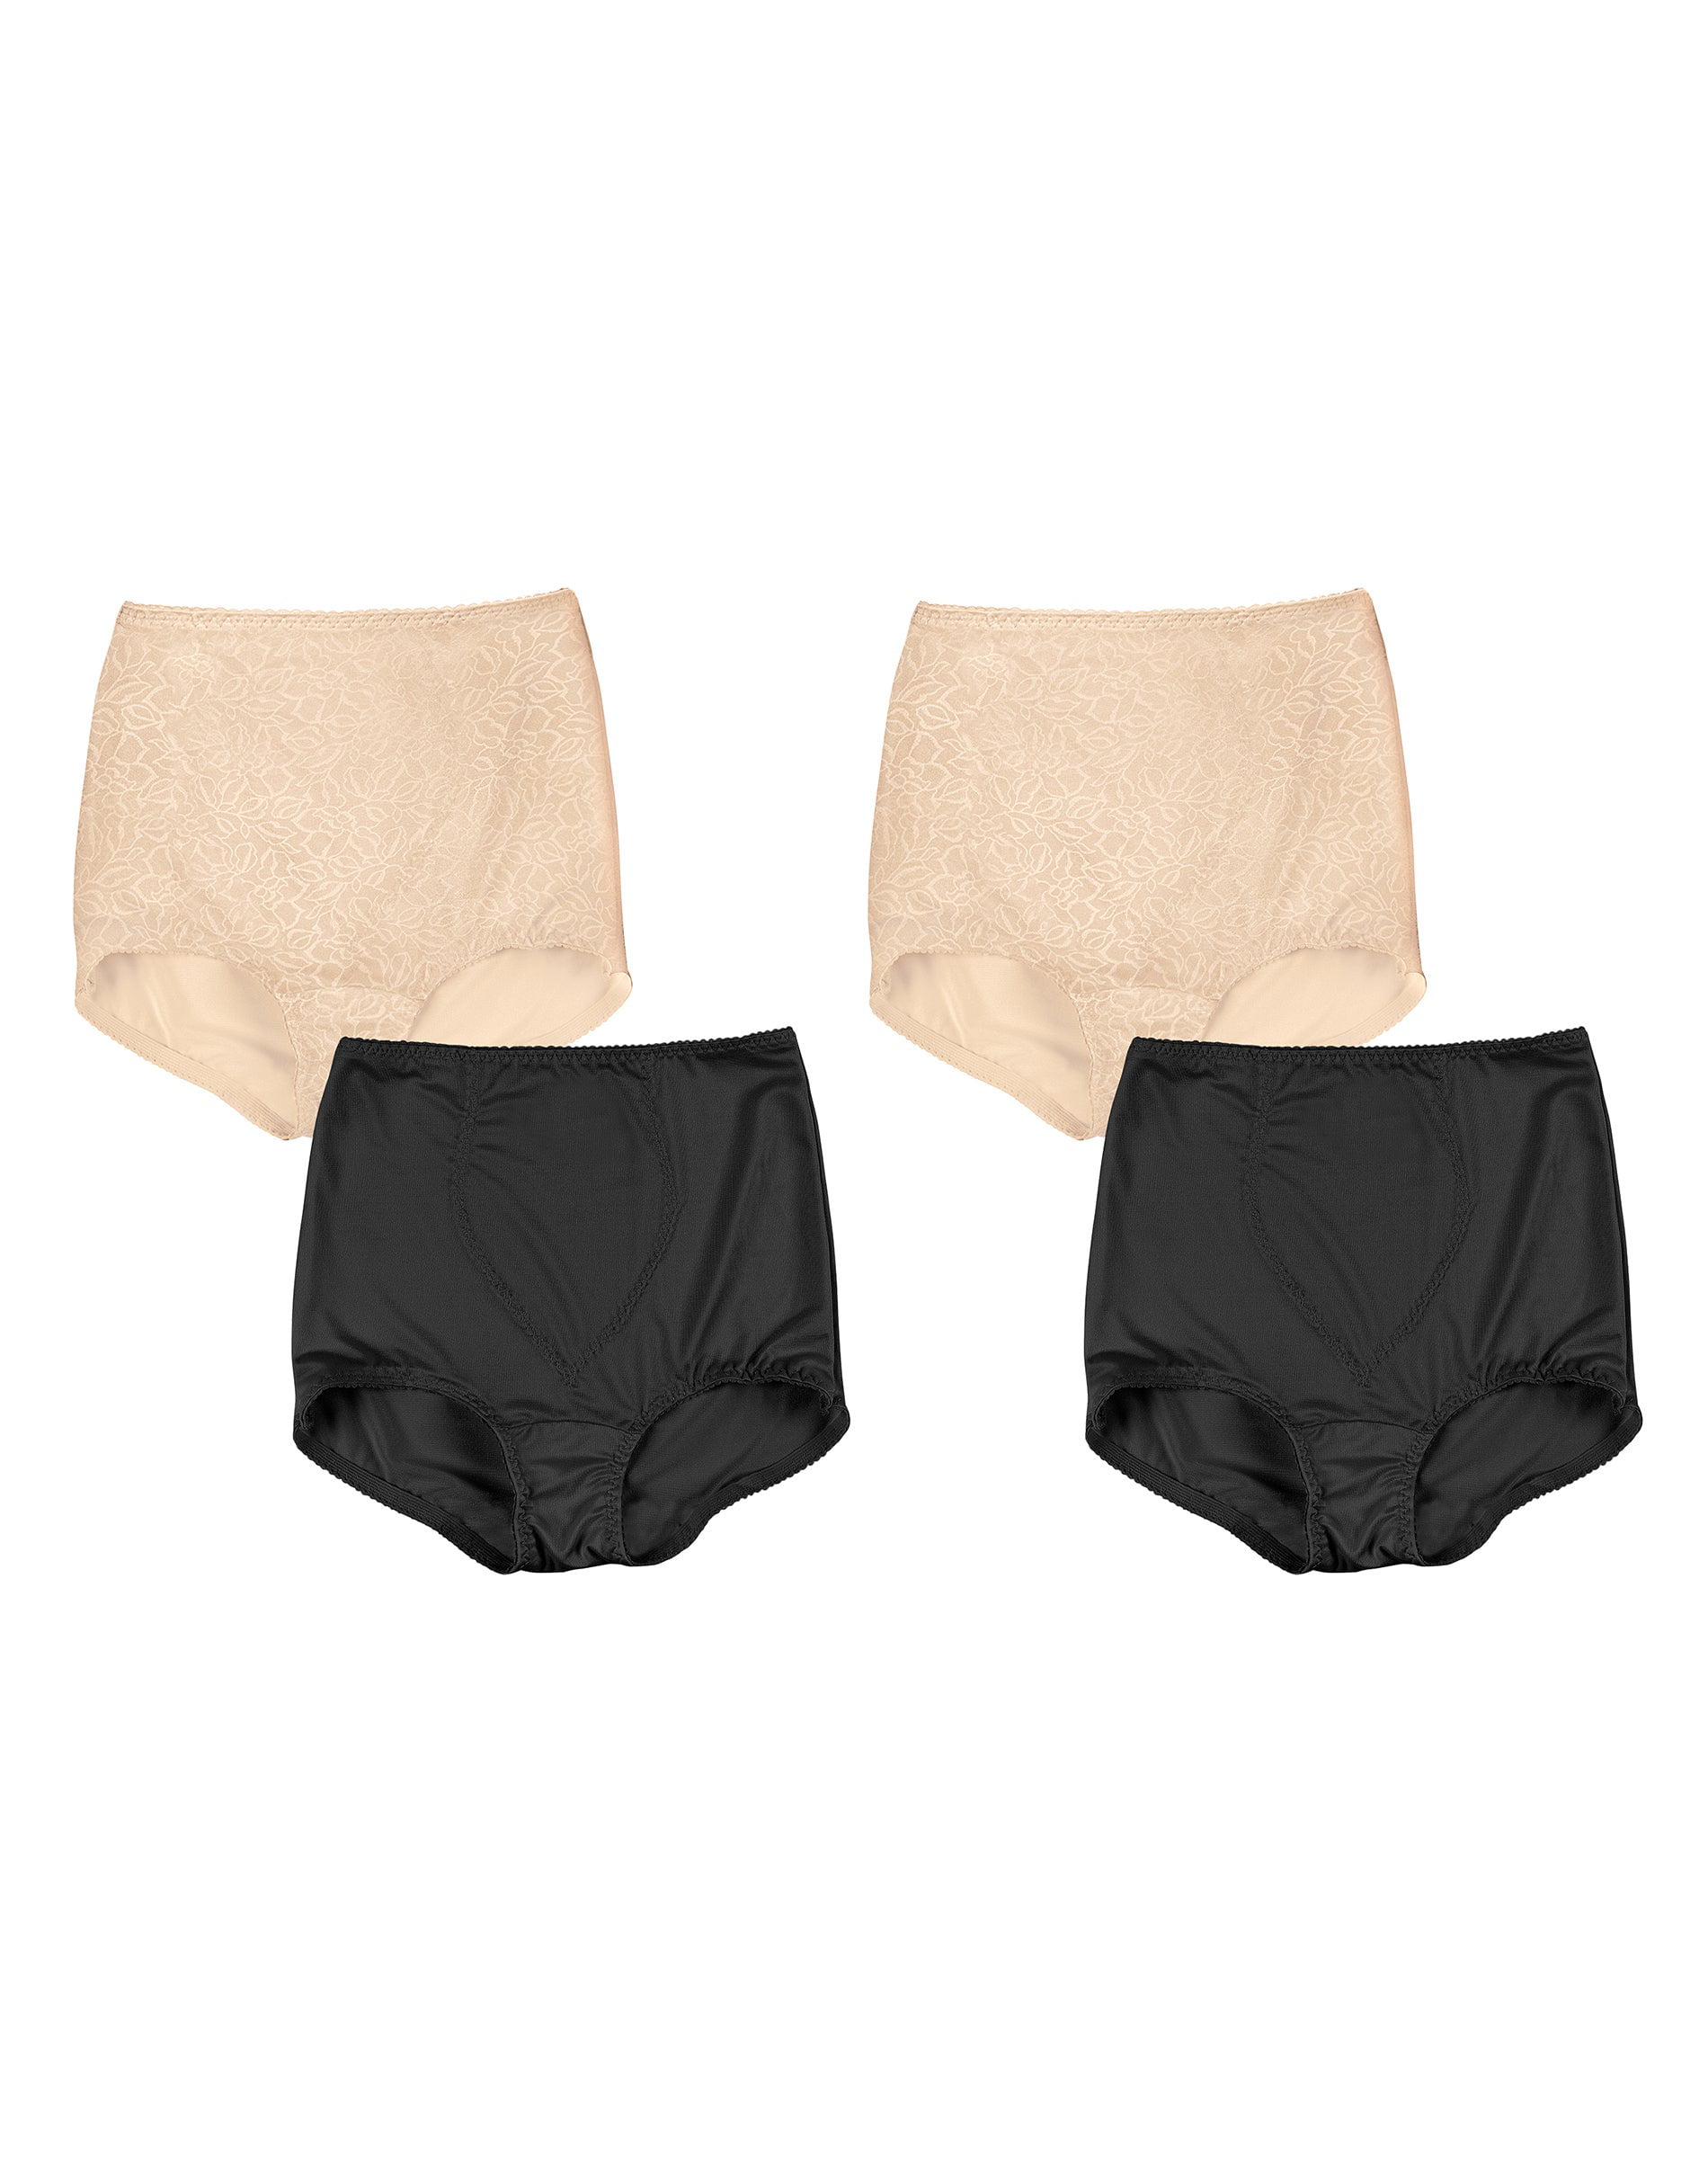 Hanes Women Brief briefs underwear 